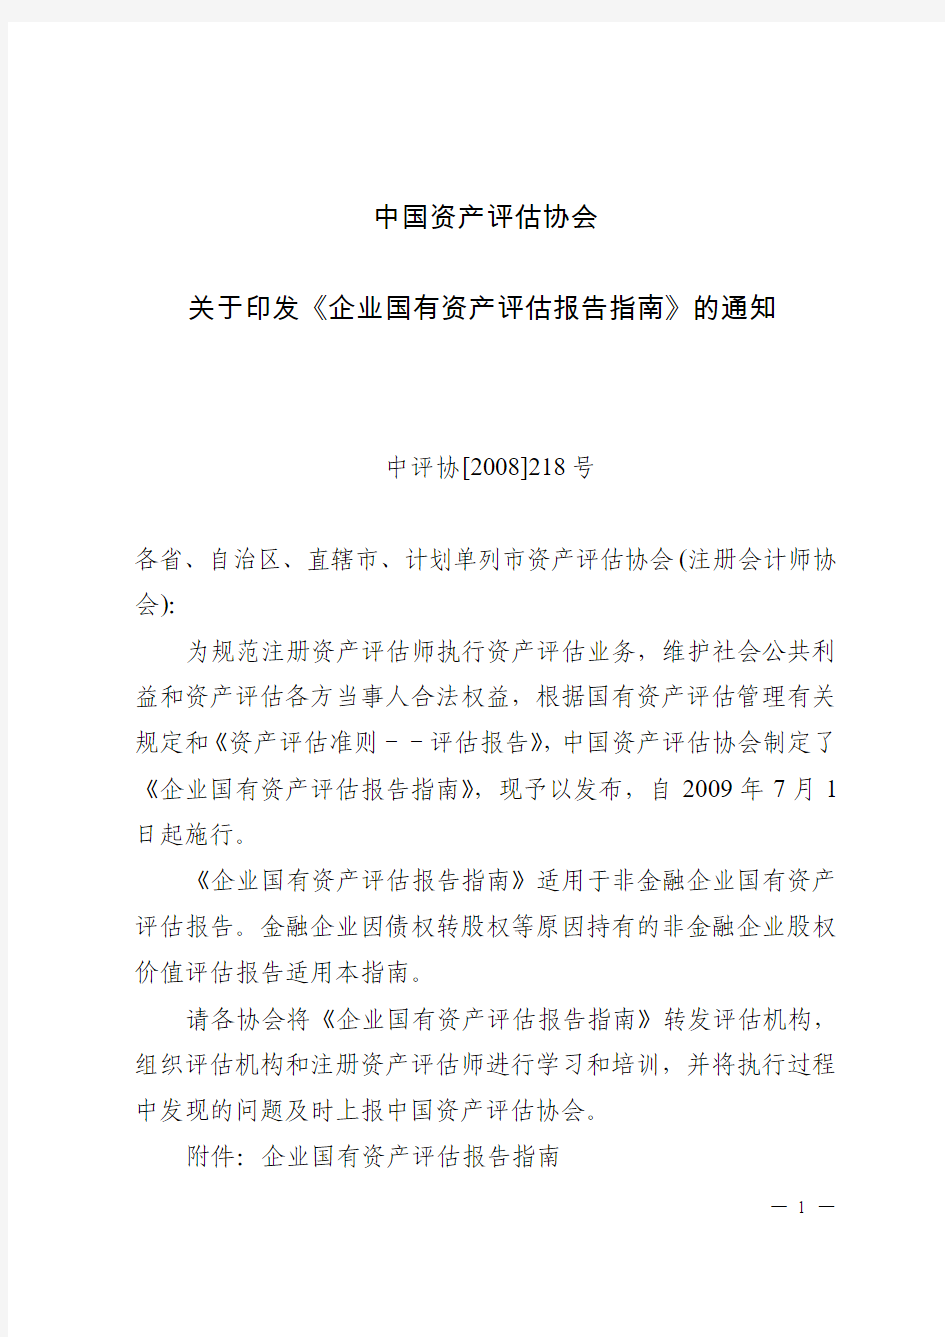 中评协[2008]218号 中国资产评估协会关于印发《企业国有资产评估报告指南》的通知